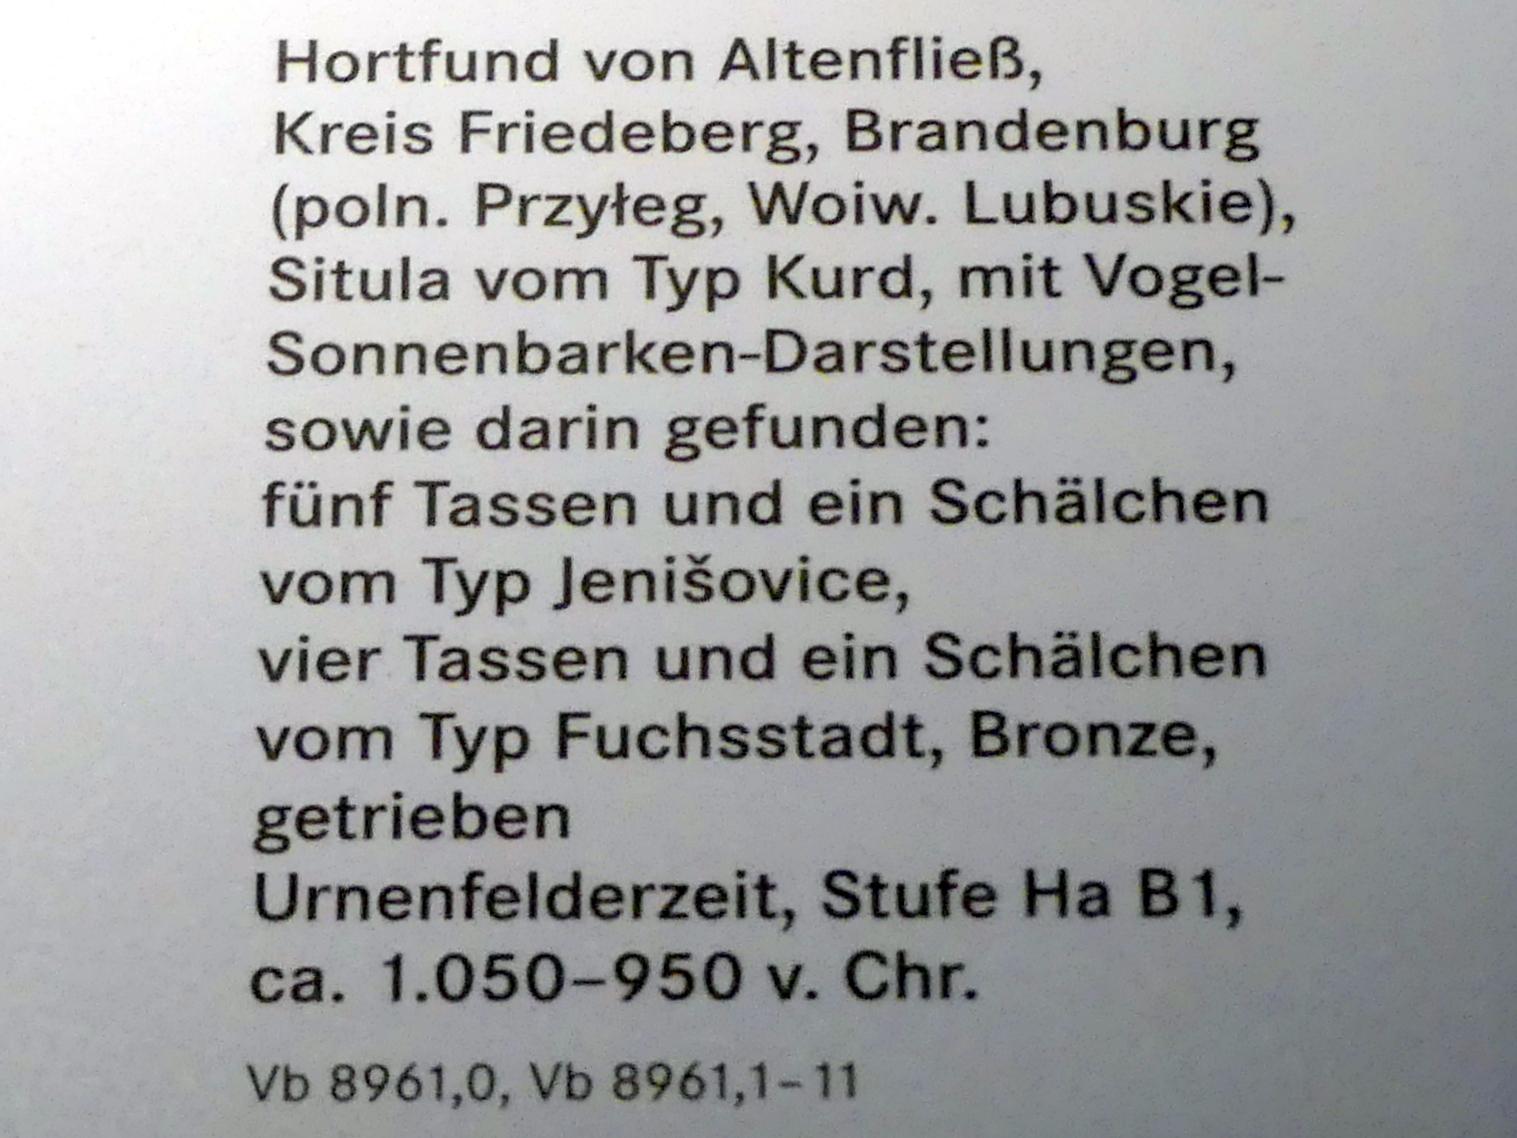 Fünf Tassen und eine Schälchen vom Typ Jenišovice, Hallstattzeit B1, Urnenfelderzeit, 1400 - 700 v. Chr., 1050 - 950 v. Chr., Bild 2/2